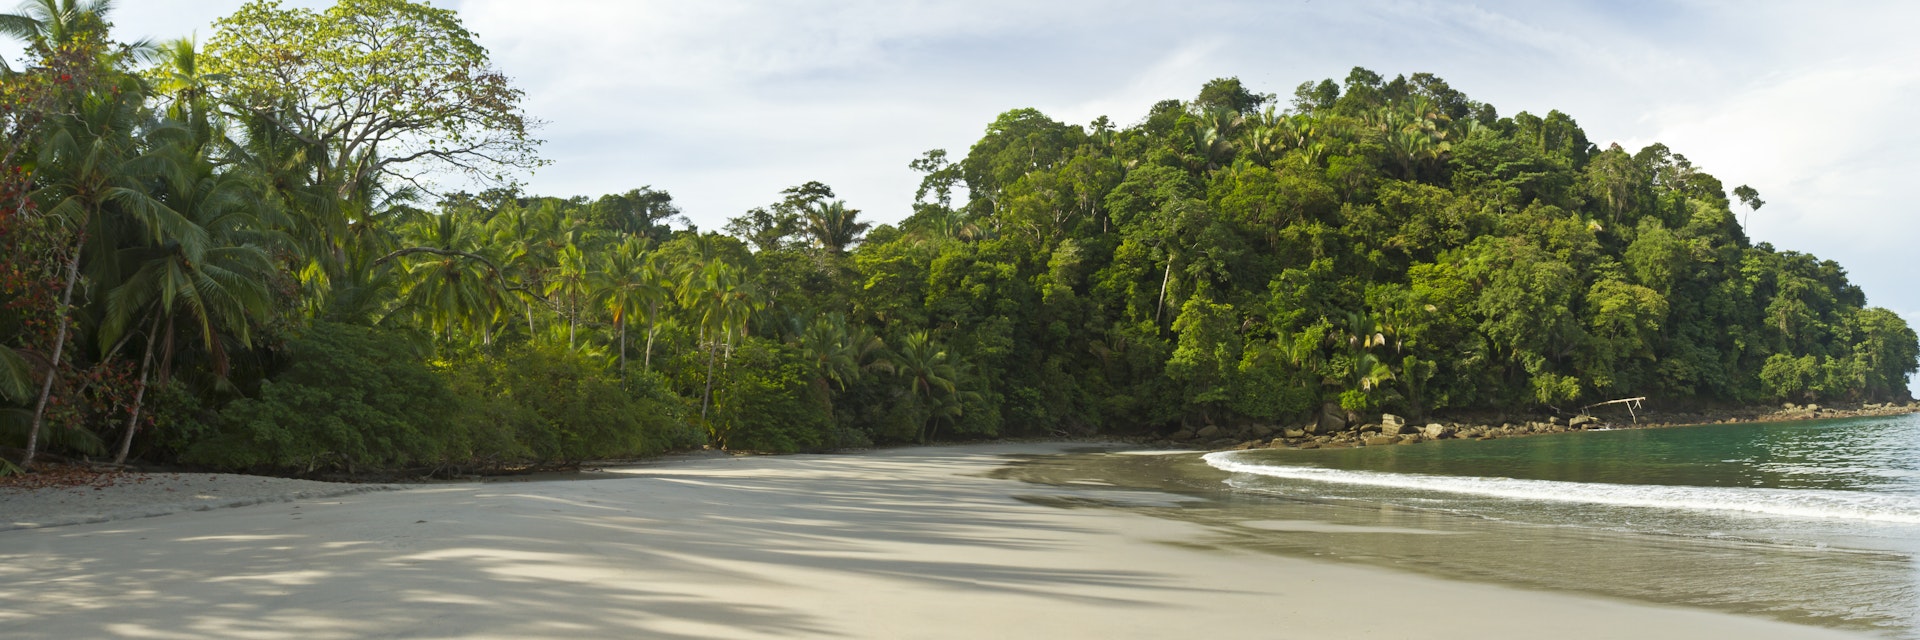 Playa Espadilla Sur & Punta Catedral in Manuel Antonio National Park, Costa Rica
